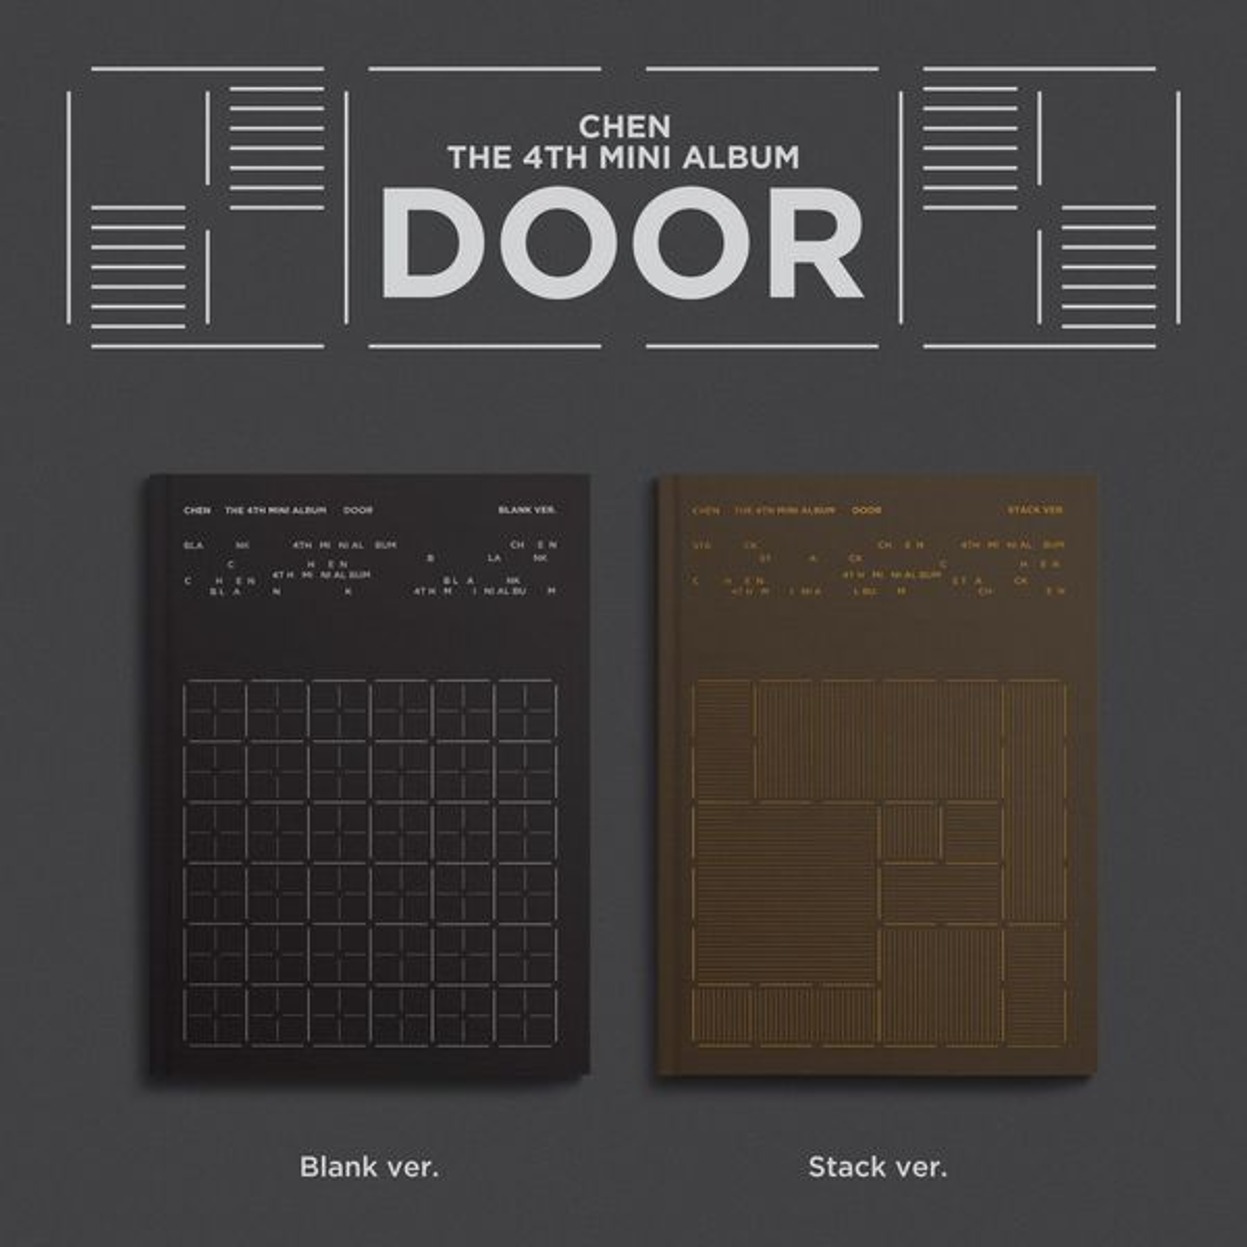 CHEN - 迷你专辑 4辑 [DOOR] (随机)